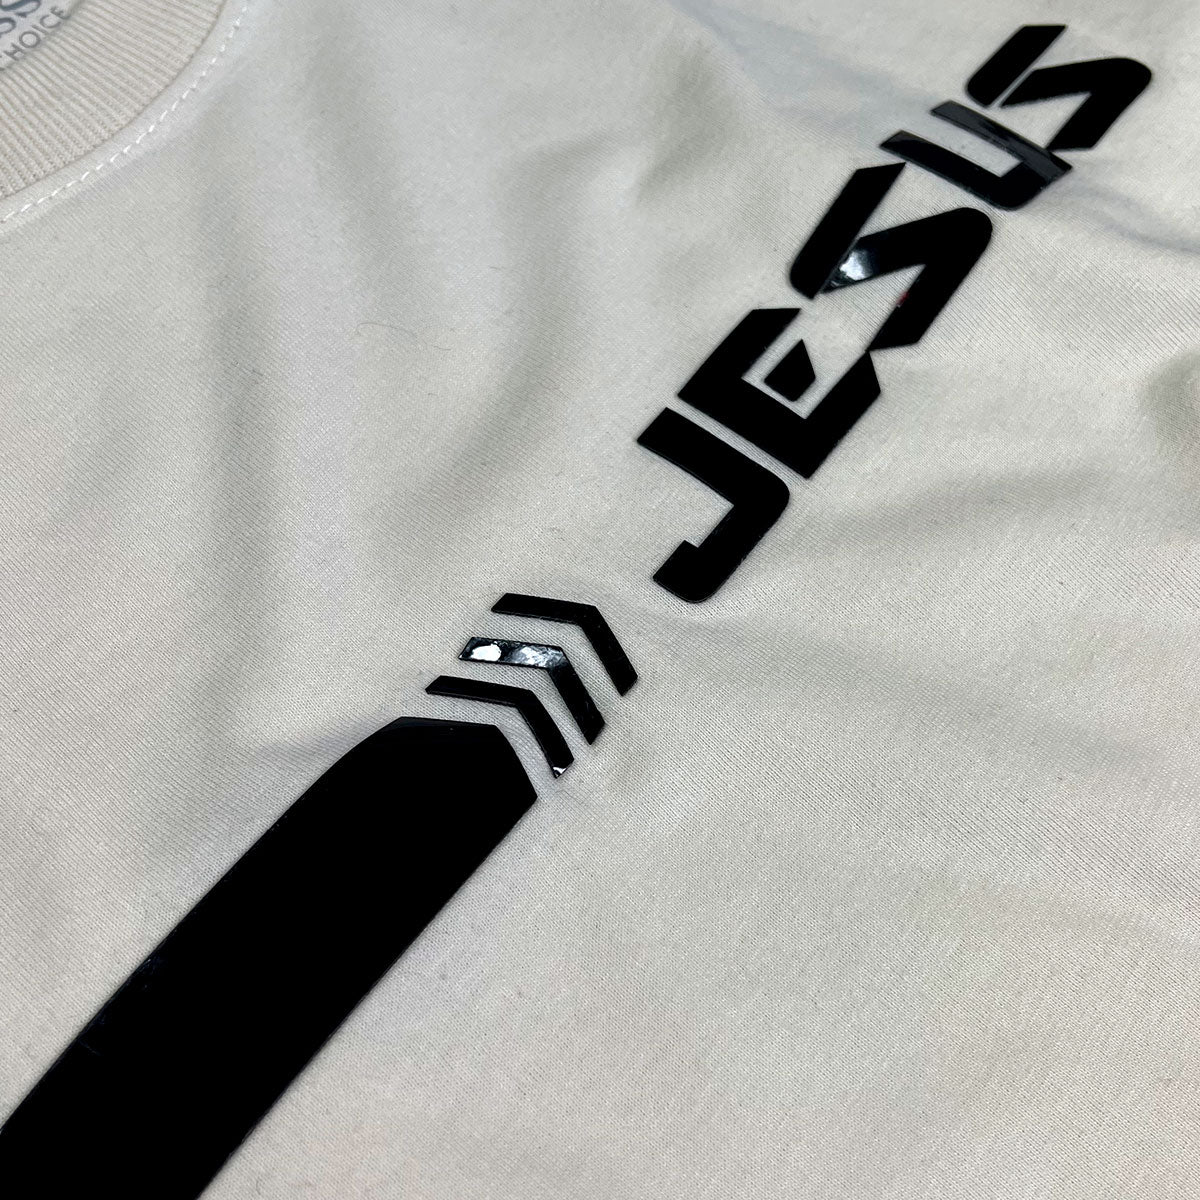 Camiseta Masculina Off White Aplique Direção Jesus